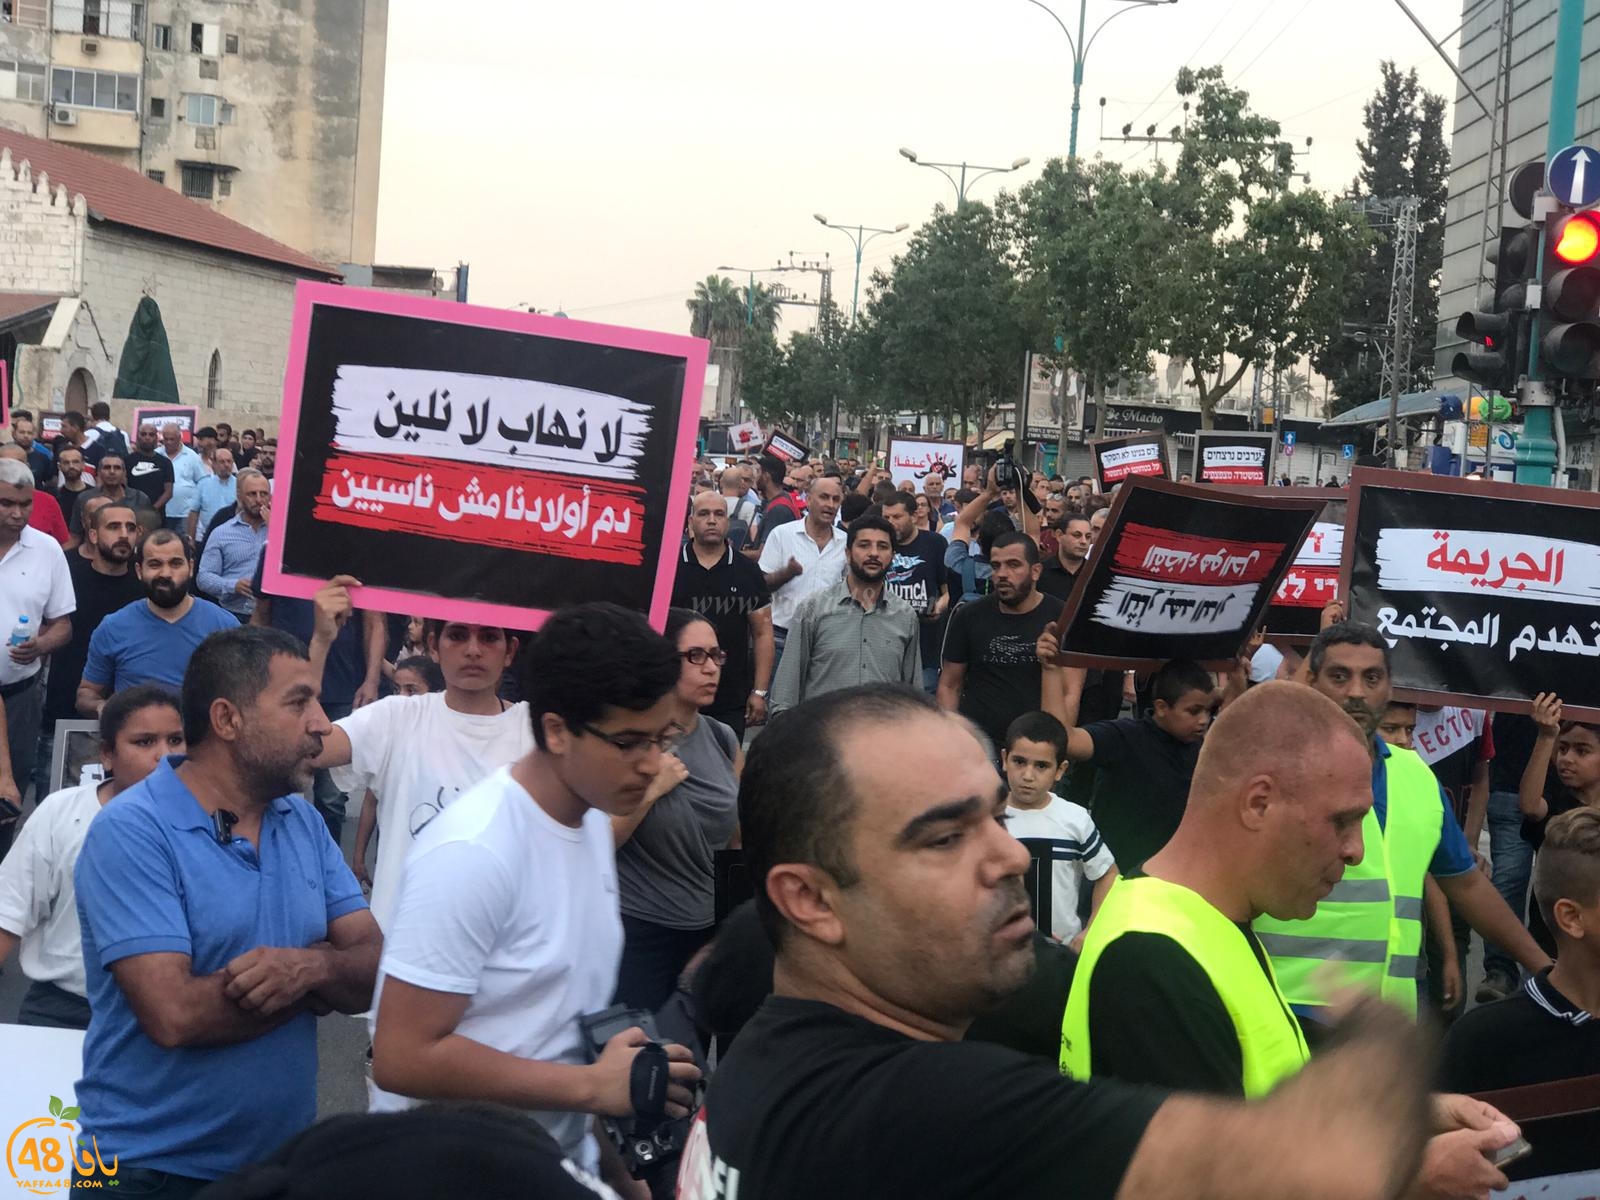 فيديو: تظاهرة قطرية غاضبة في مدينة الرملة احتجاجاً على العنف والجريمة